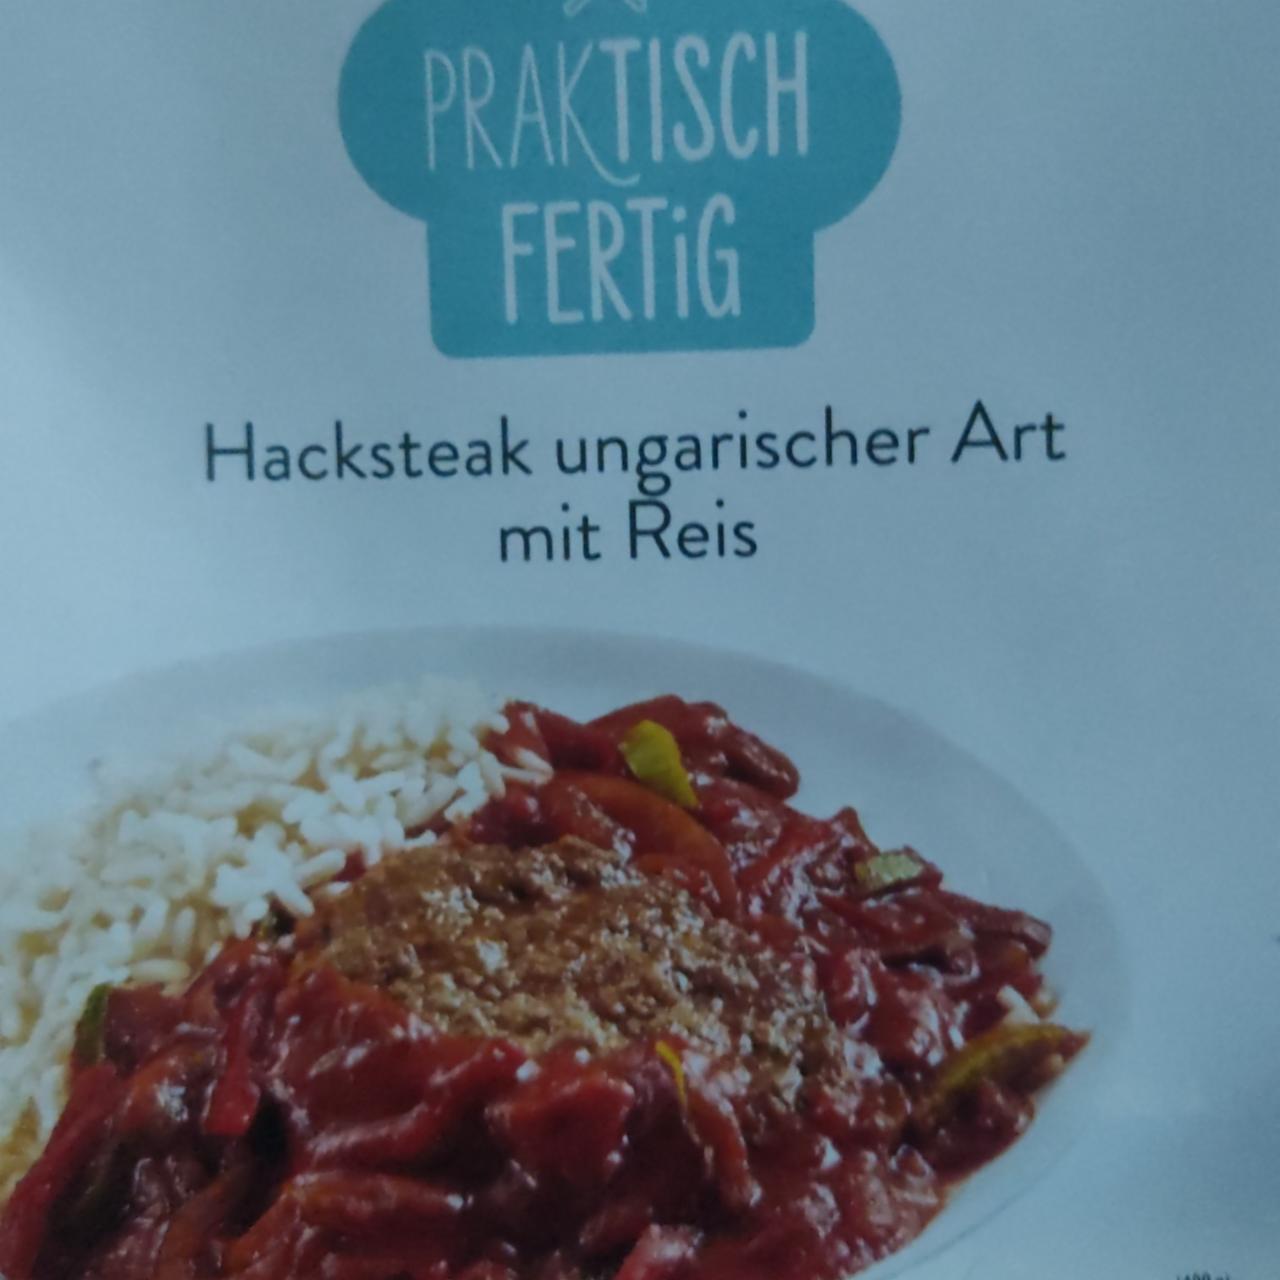 Fotografie - Hacksteak ungarischer Art mit Reis Praktisch Fertig Snack Time